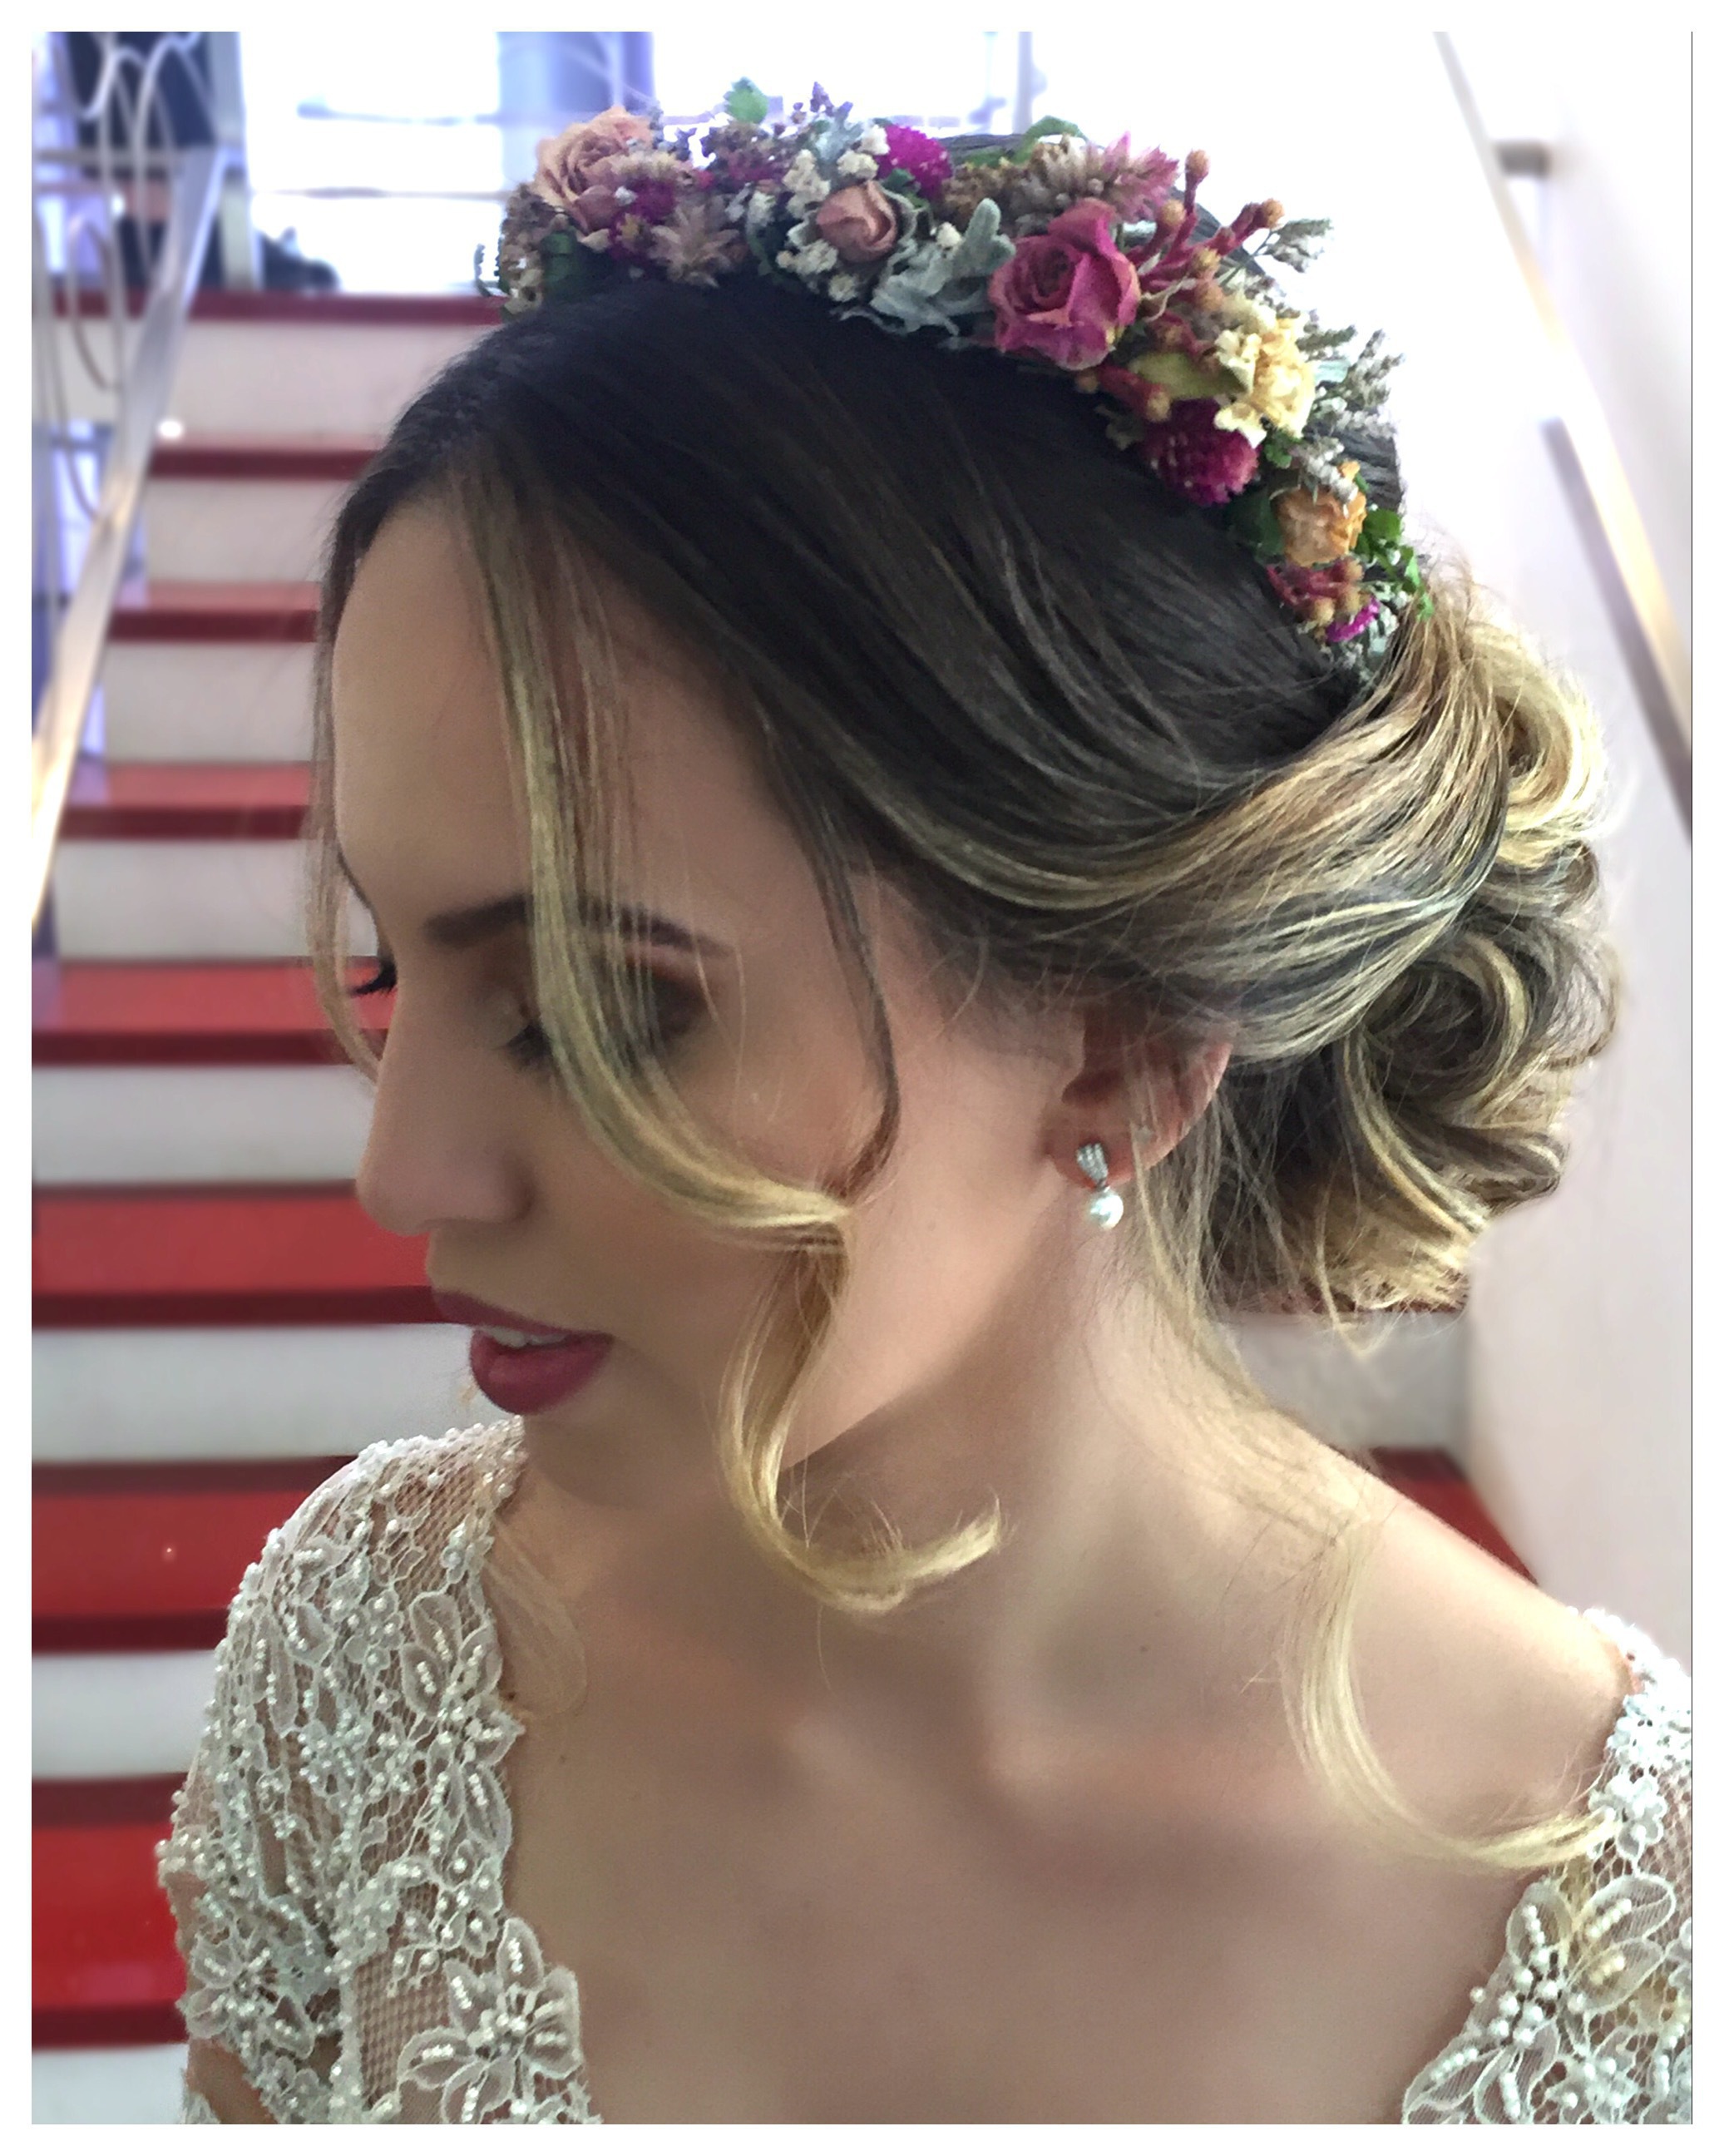 Nossa linda noiva de sábado.. Com um coque baixo super romântico e uma coroa de flores que trouxe o toque de sofisticação e elegância... Makeup linda e harmoniosa por @allexgorenmua... Em @beautybase_lf... #wedding #weddingday #weddingphotography #bride #bridal #bridalhair #bridalmakeup #cerimonial #noiva #casamento #penteadonoiva #maquiagem #makeup #hairstyle #penteado #love #picoftheday #cute #beauty #beautiful #beleza #campinas #2017 #noivas2017 #noivalinda @beautybase_lf @noivandoecasandoinspiracoes @noivasboutique @noivasdobrasil @instadenoivas @noivasmakeup @ouniversodasnoivas @wedding_bridetobride @penteadosluxos #photography #fotografia  cabelo cabeleireiro(a)